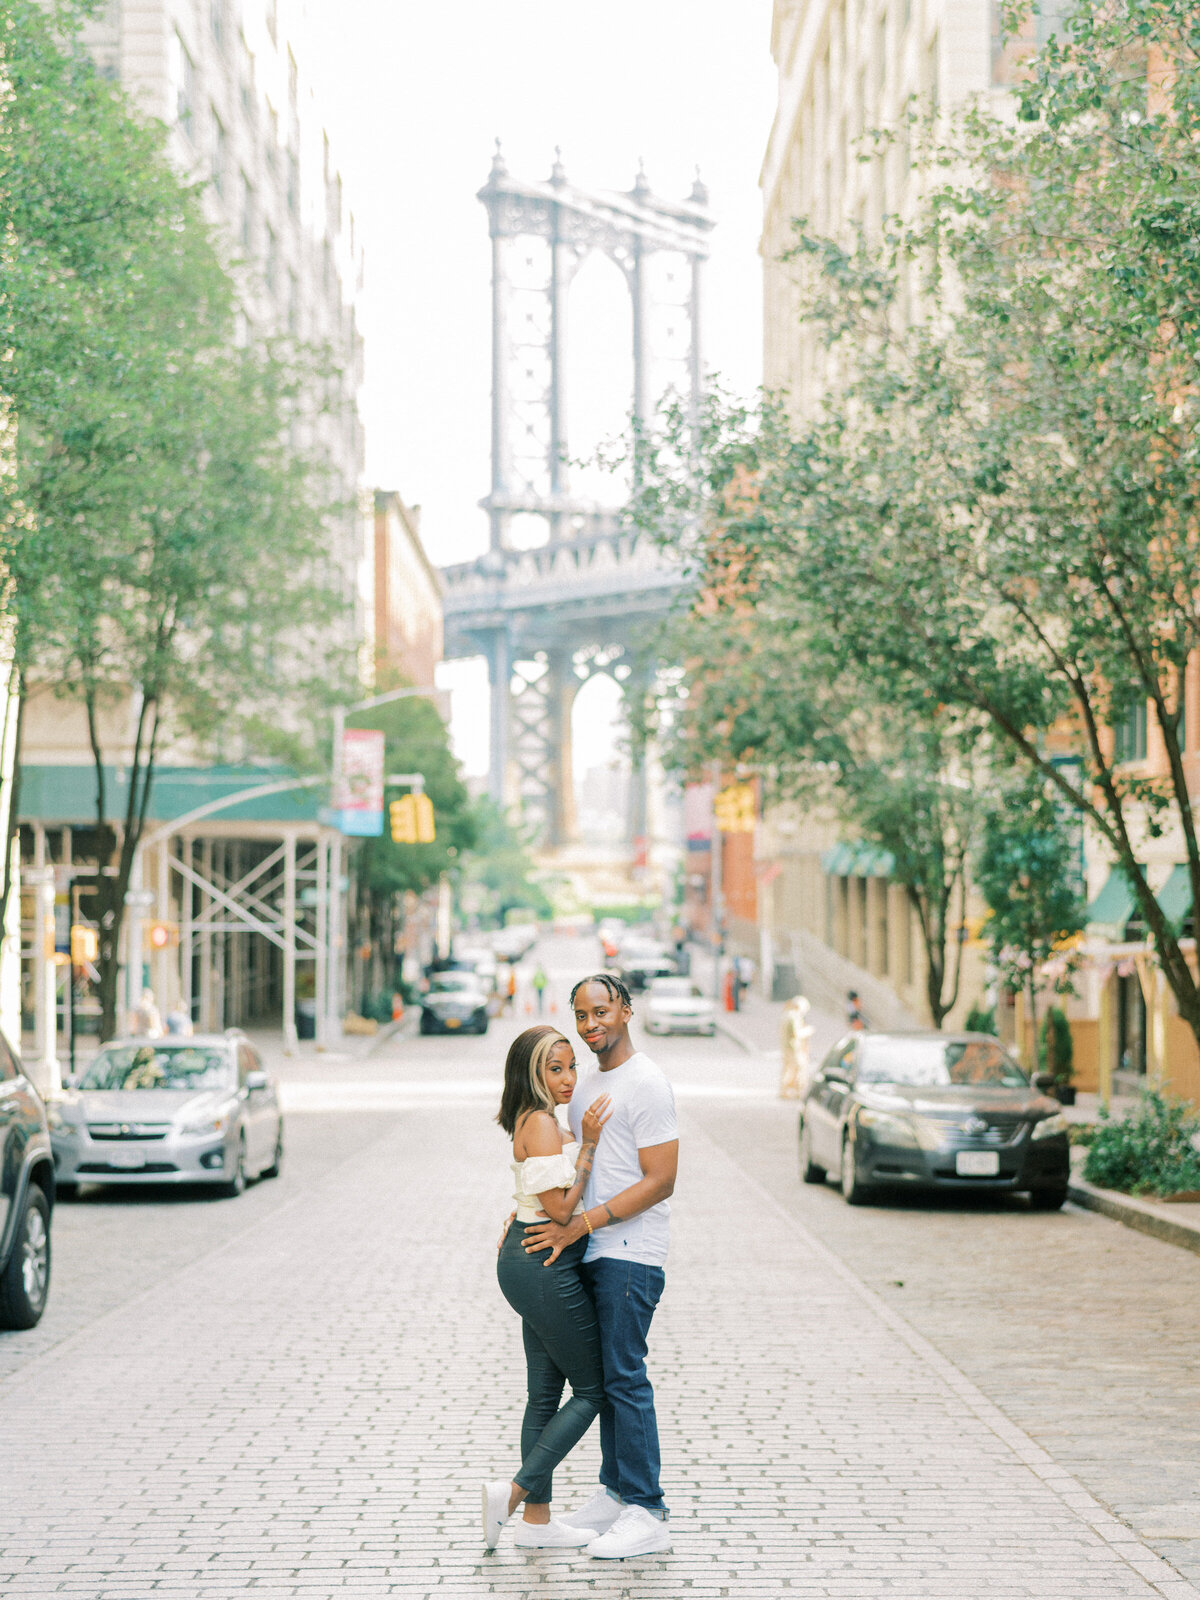 Brooklyn Bridge and DUMBO Sunrise, Engagement Session | Amarachi Ikeji Photography 42